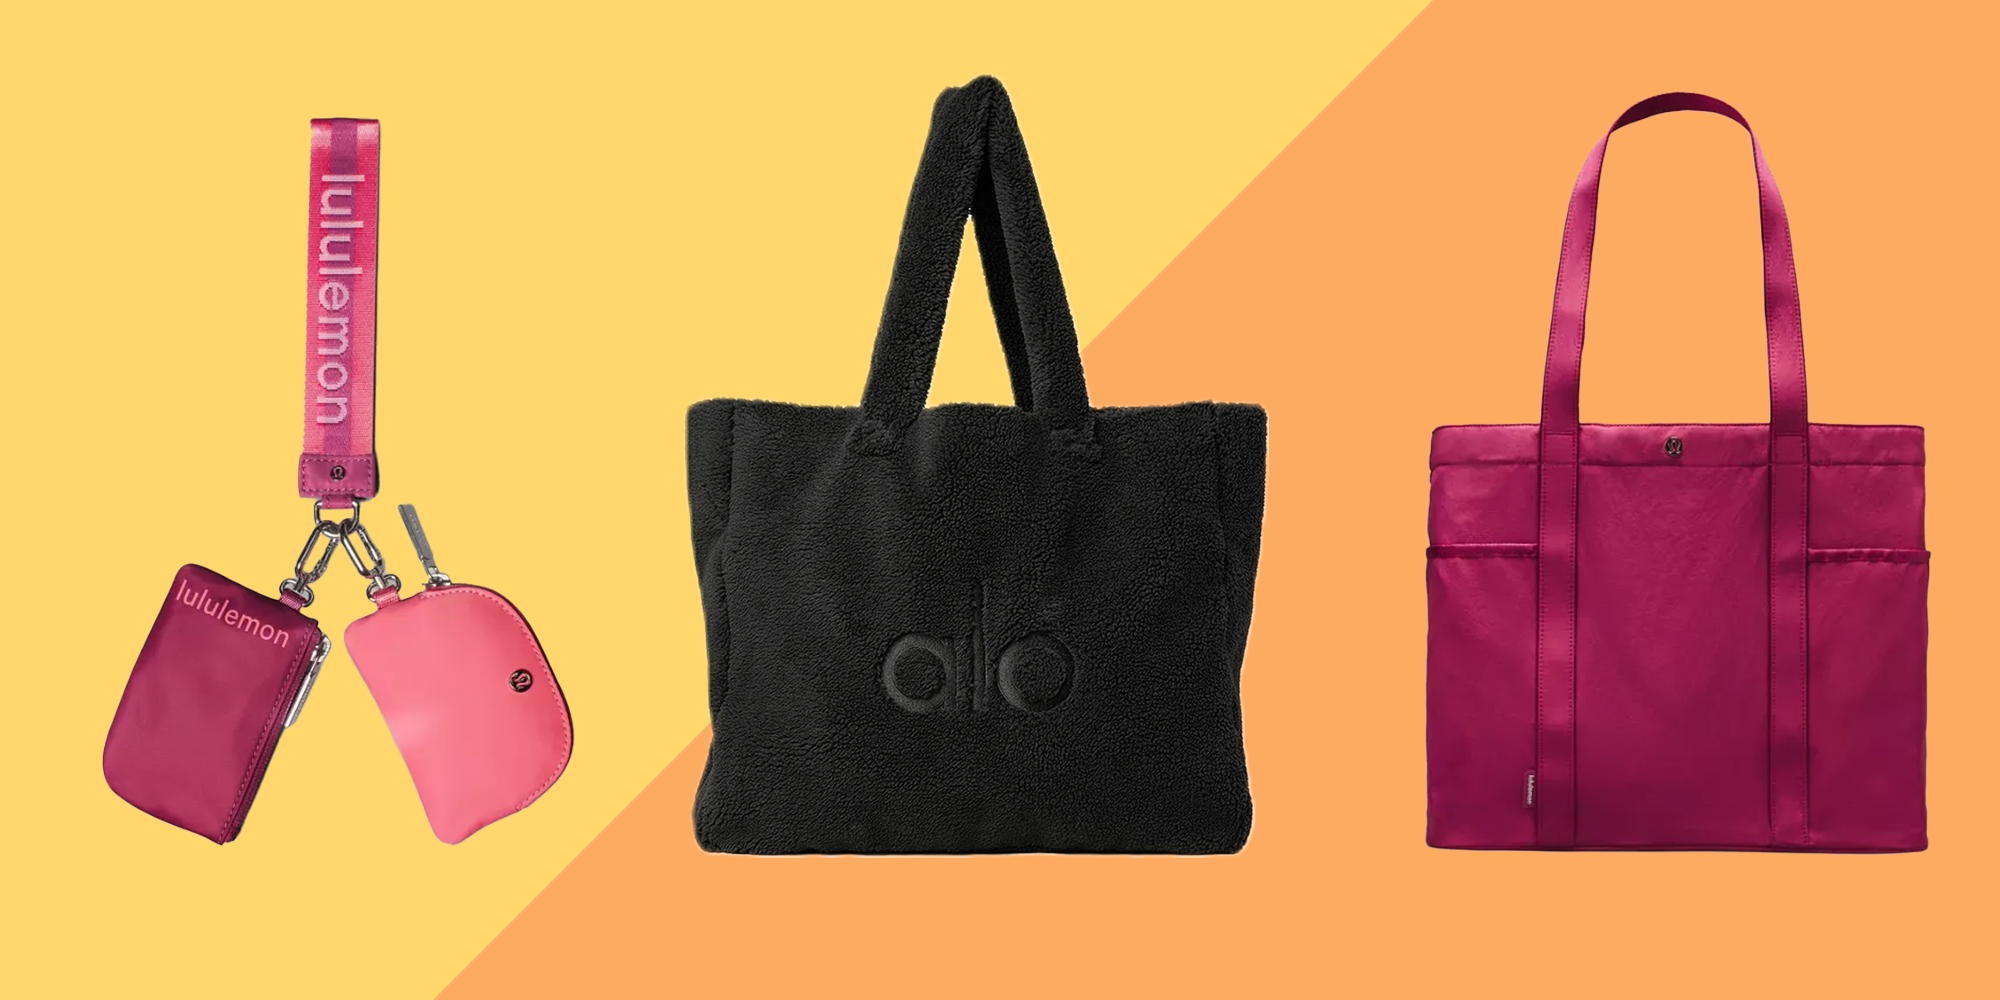 Stylish and Eco-friendly Small Lululemon Reusable Bag